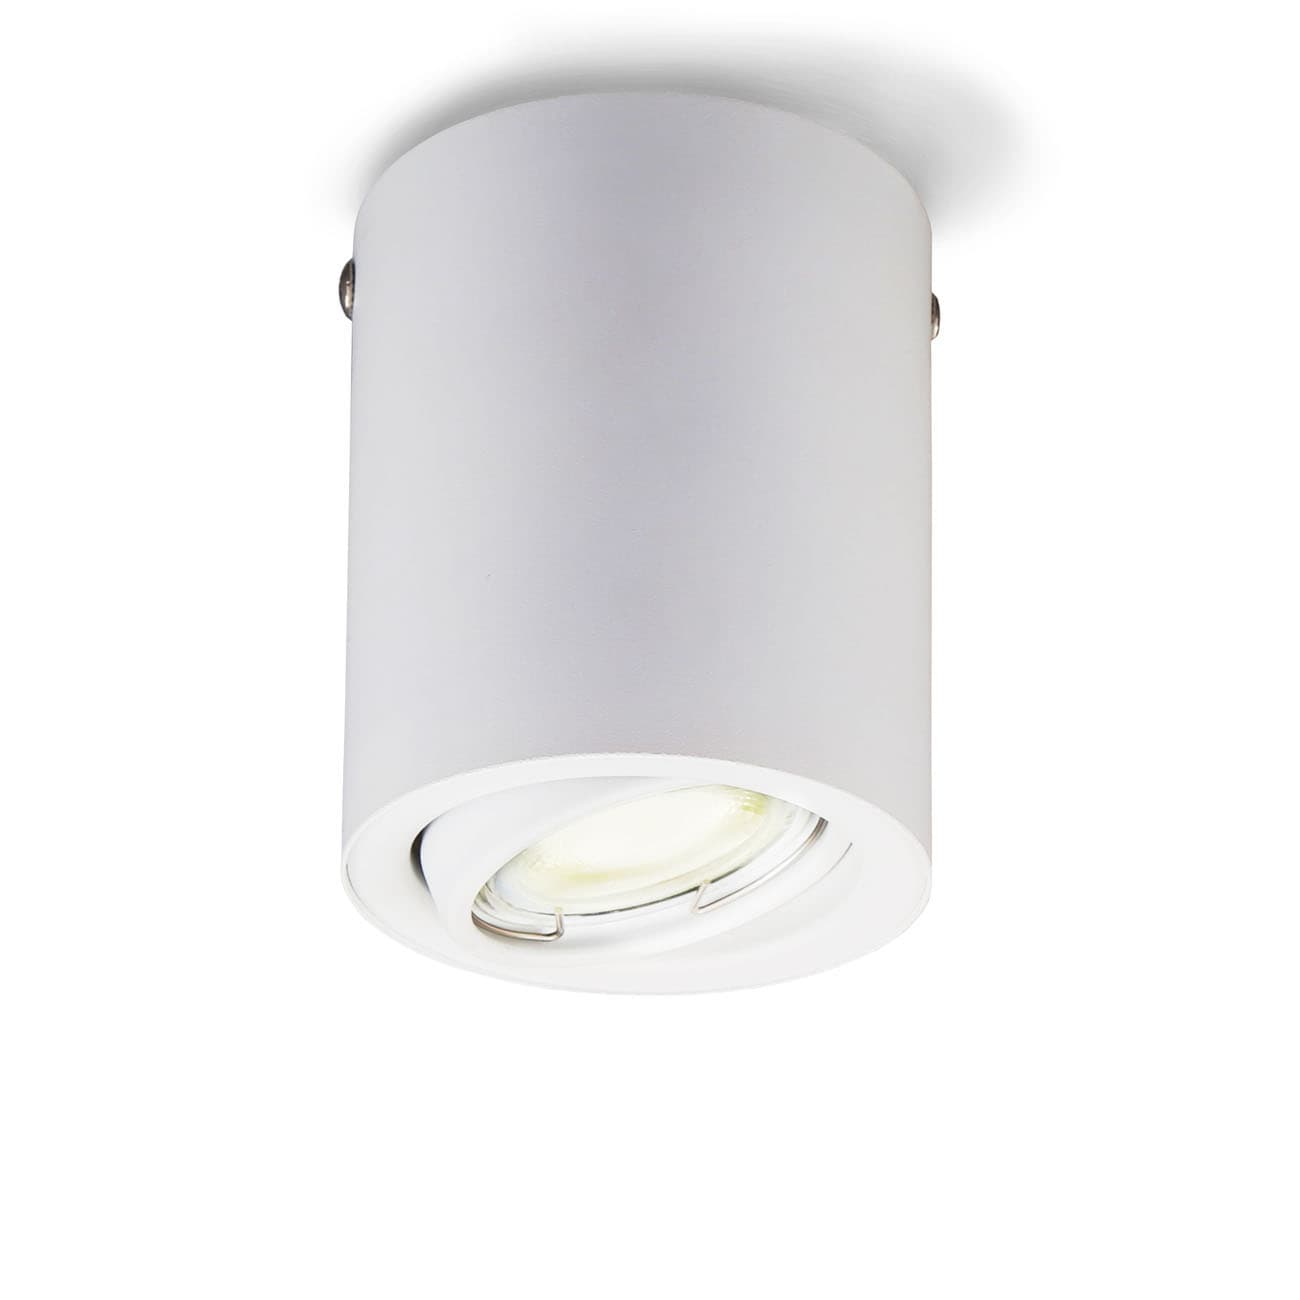 LED Deckenlampe rund 80x105mm - 1-flammig - Deckenleuchte Aufbauspot Flur Küche Bad GU10 5W 400lm 3000K warmweiß | weiß - 1